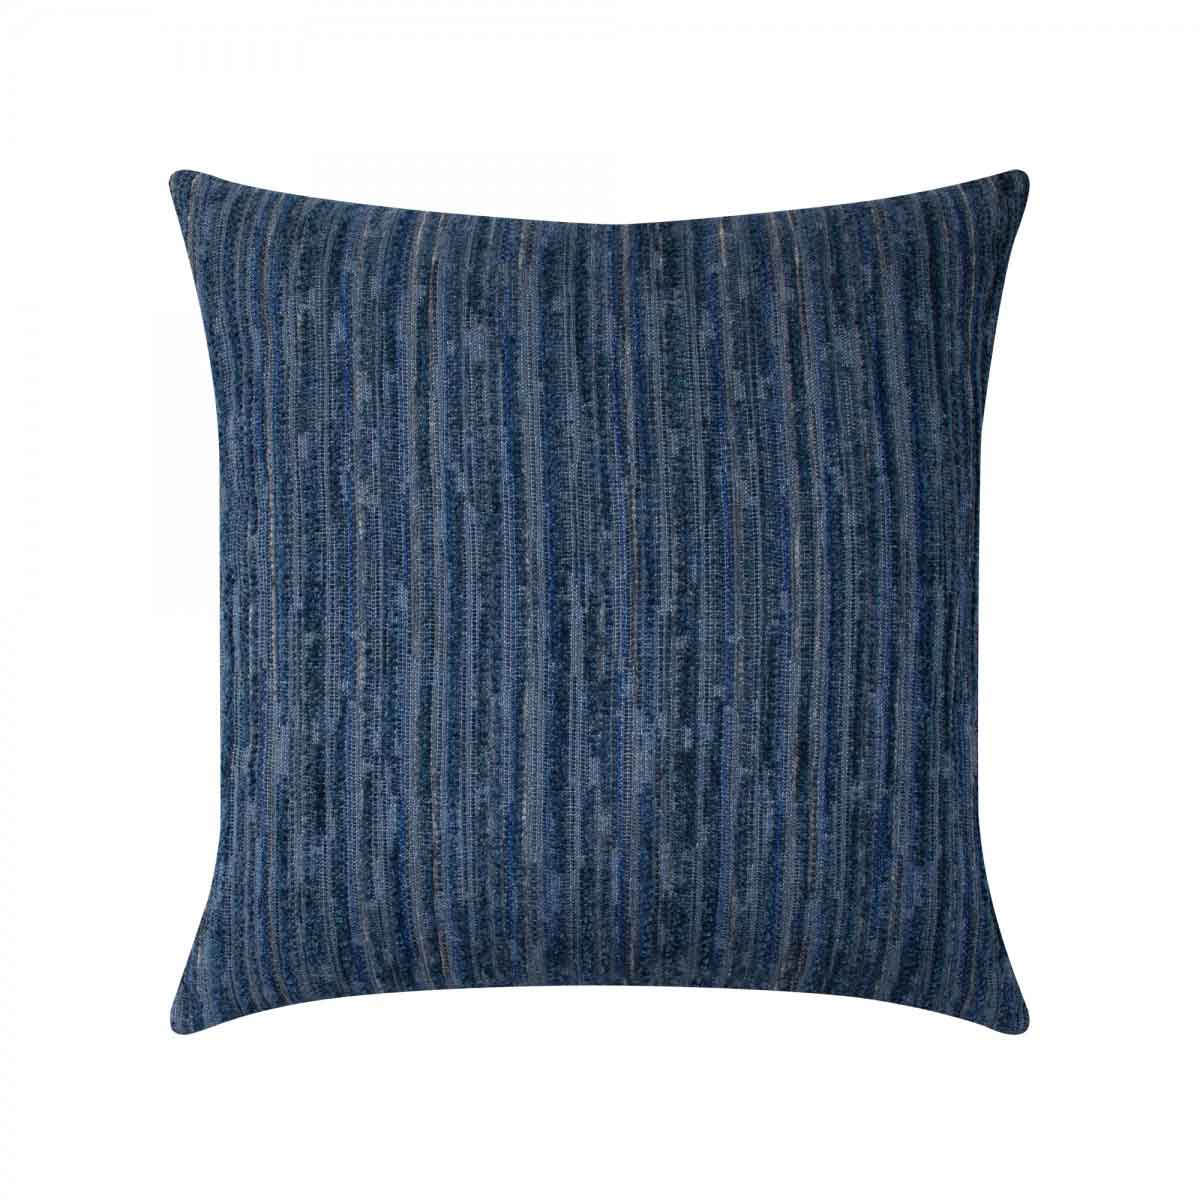 Luxe Stripe Indigo Pillow